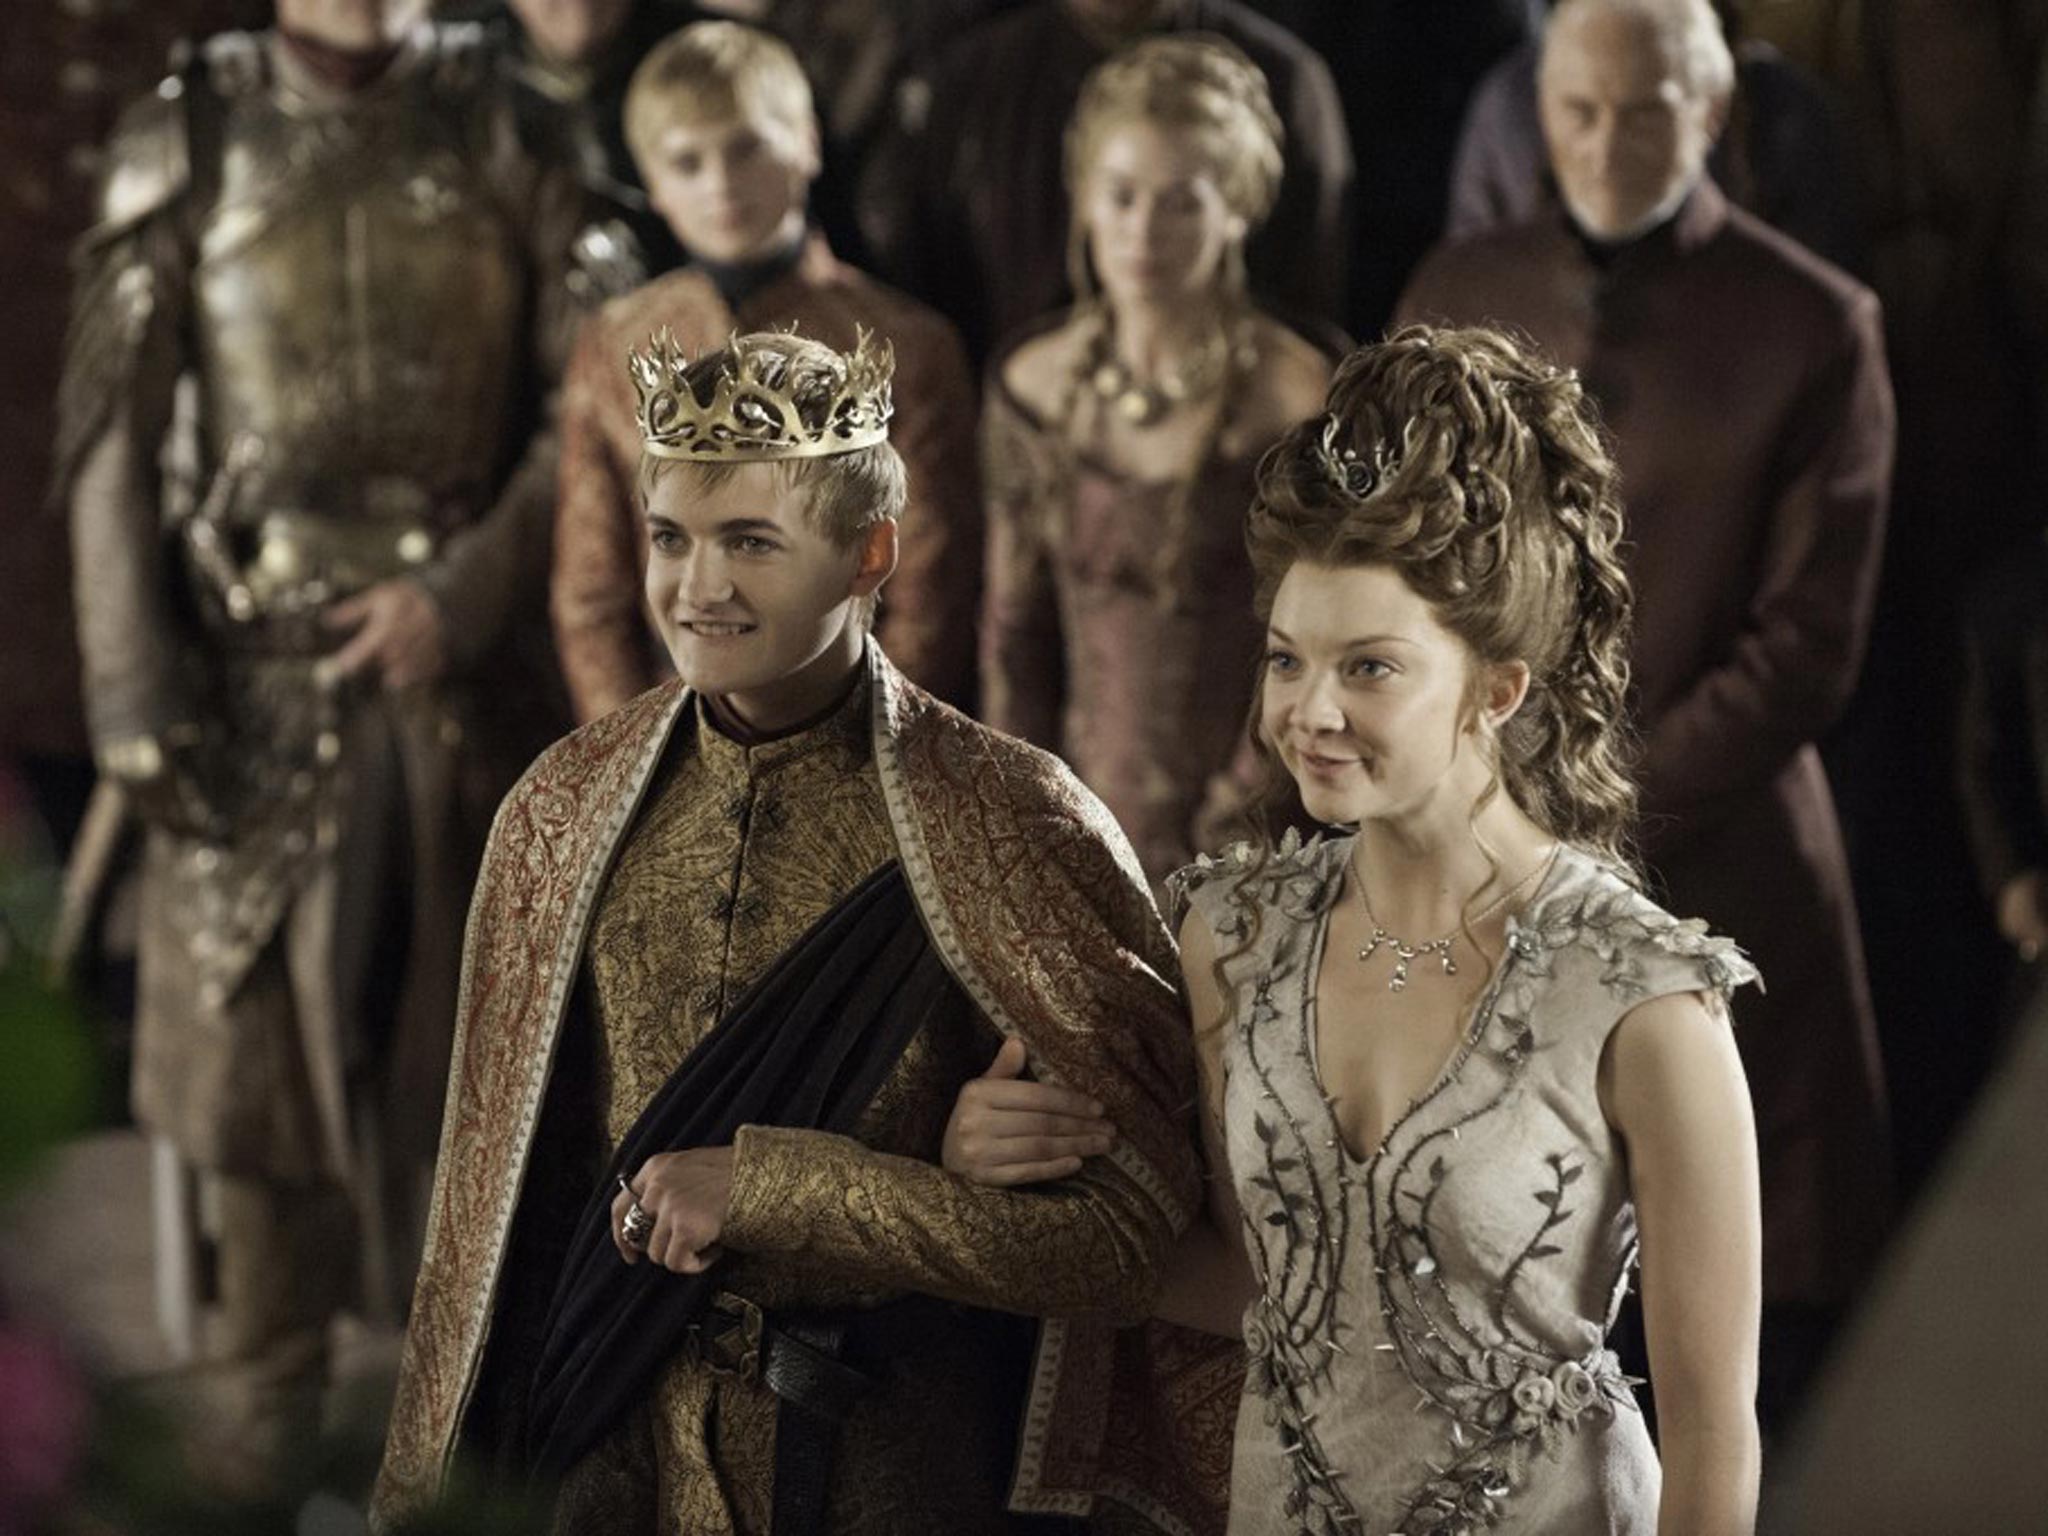 King Joffrey enjoyed pulling Kanye West-like tantrums